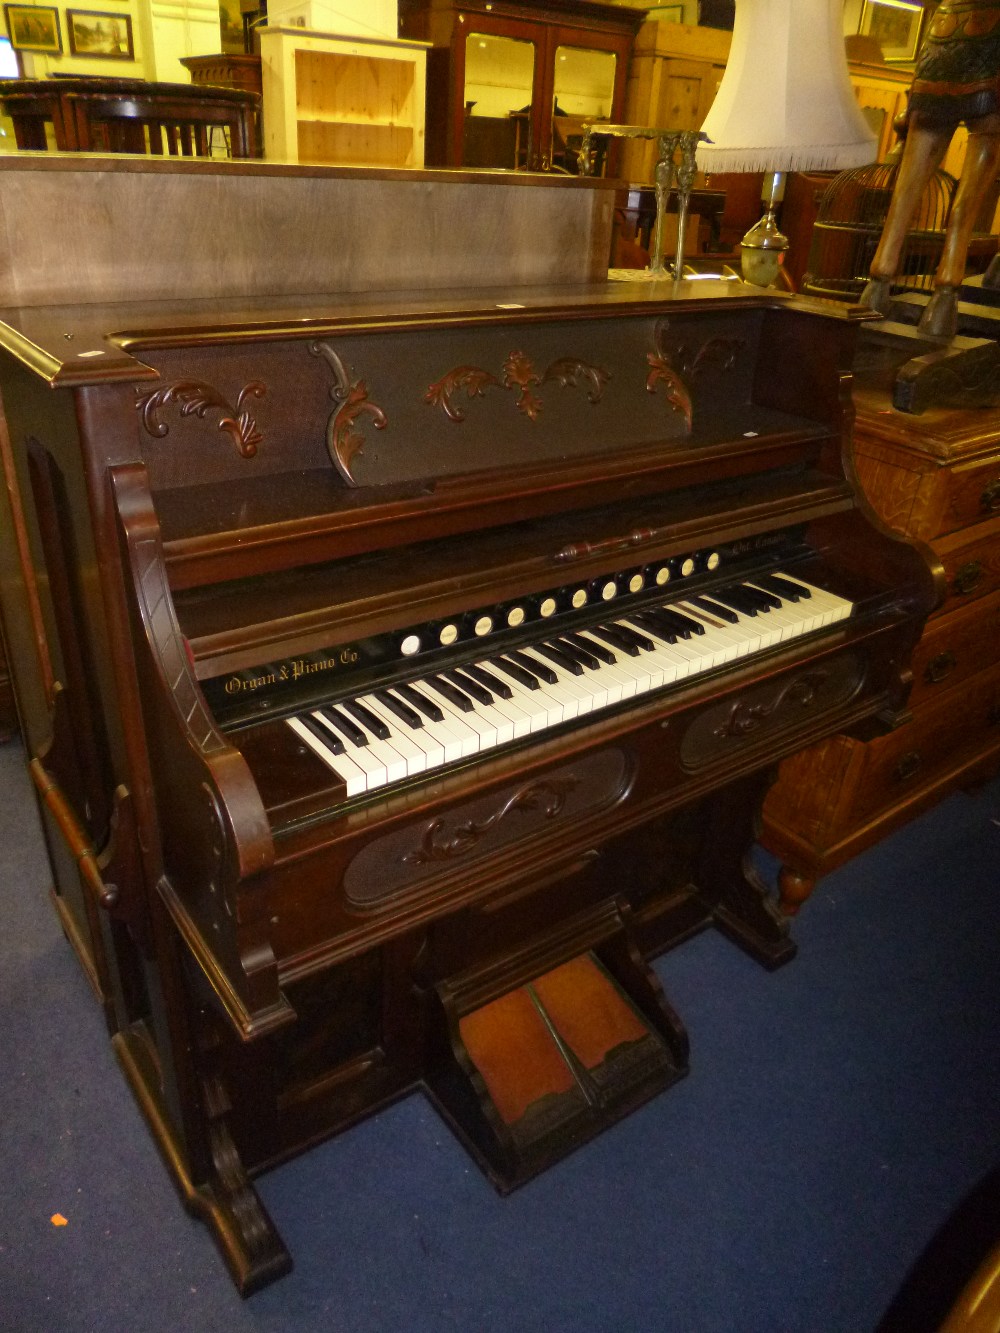 A Dominion organ